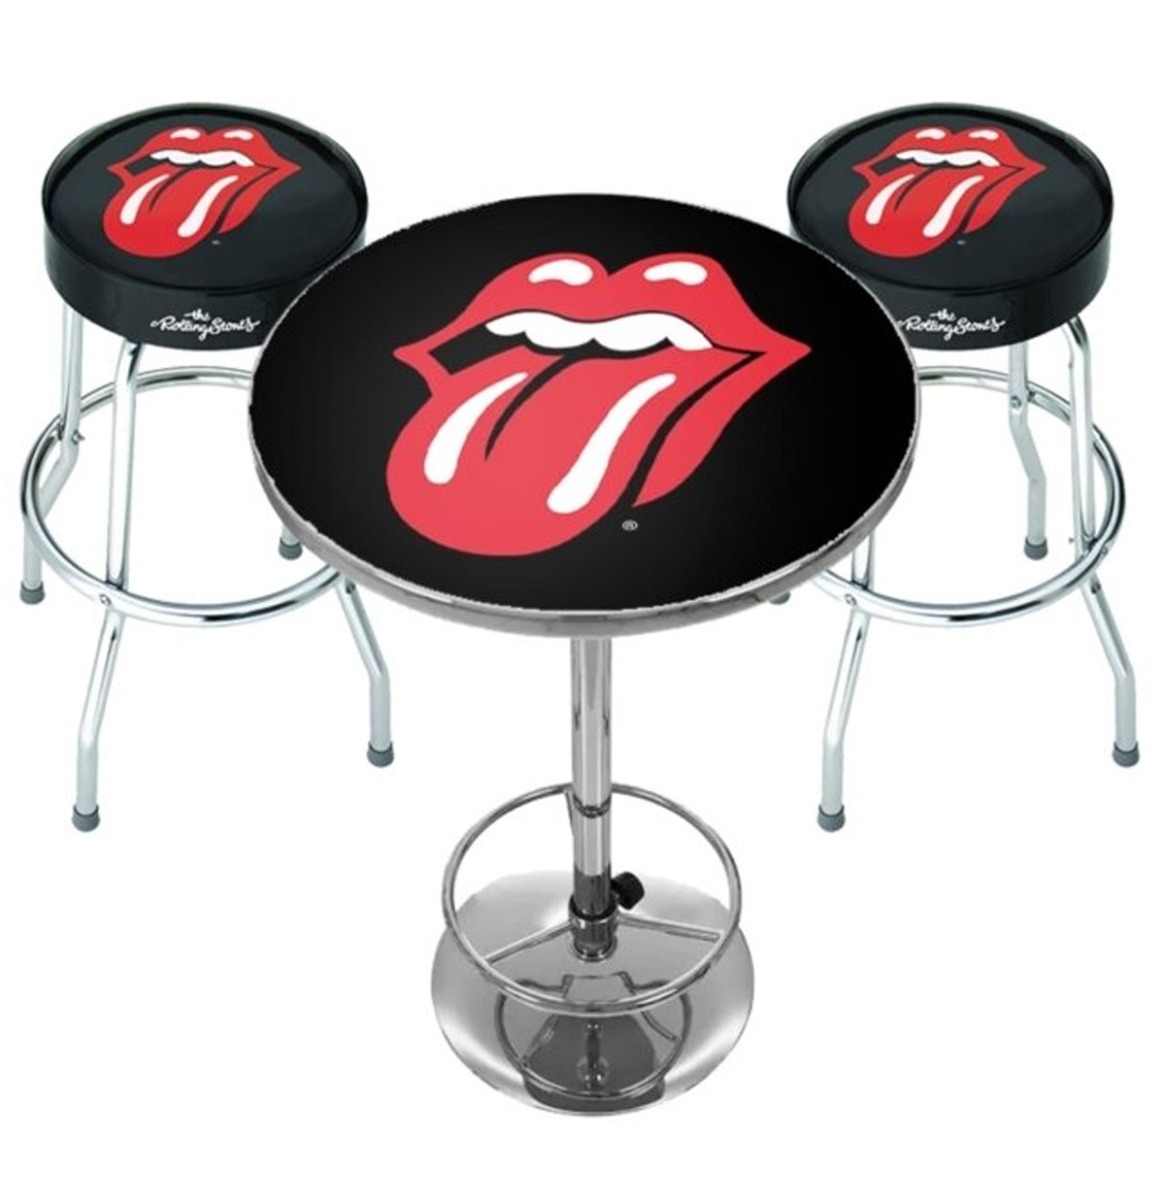 Rolling Stones Classic Tongue Bar Set - Statafel + 2 Barkrukken